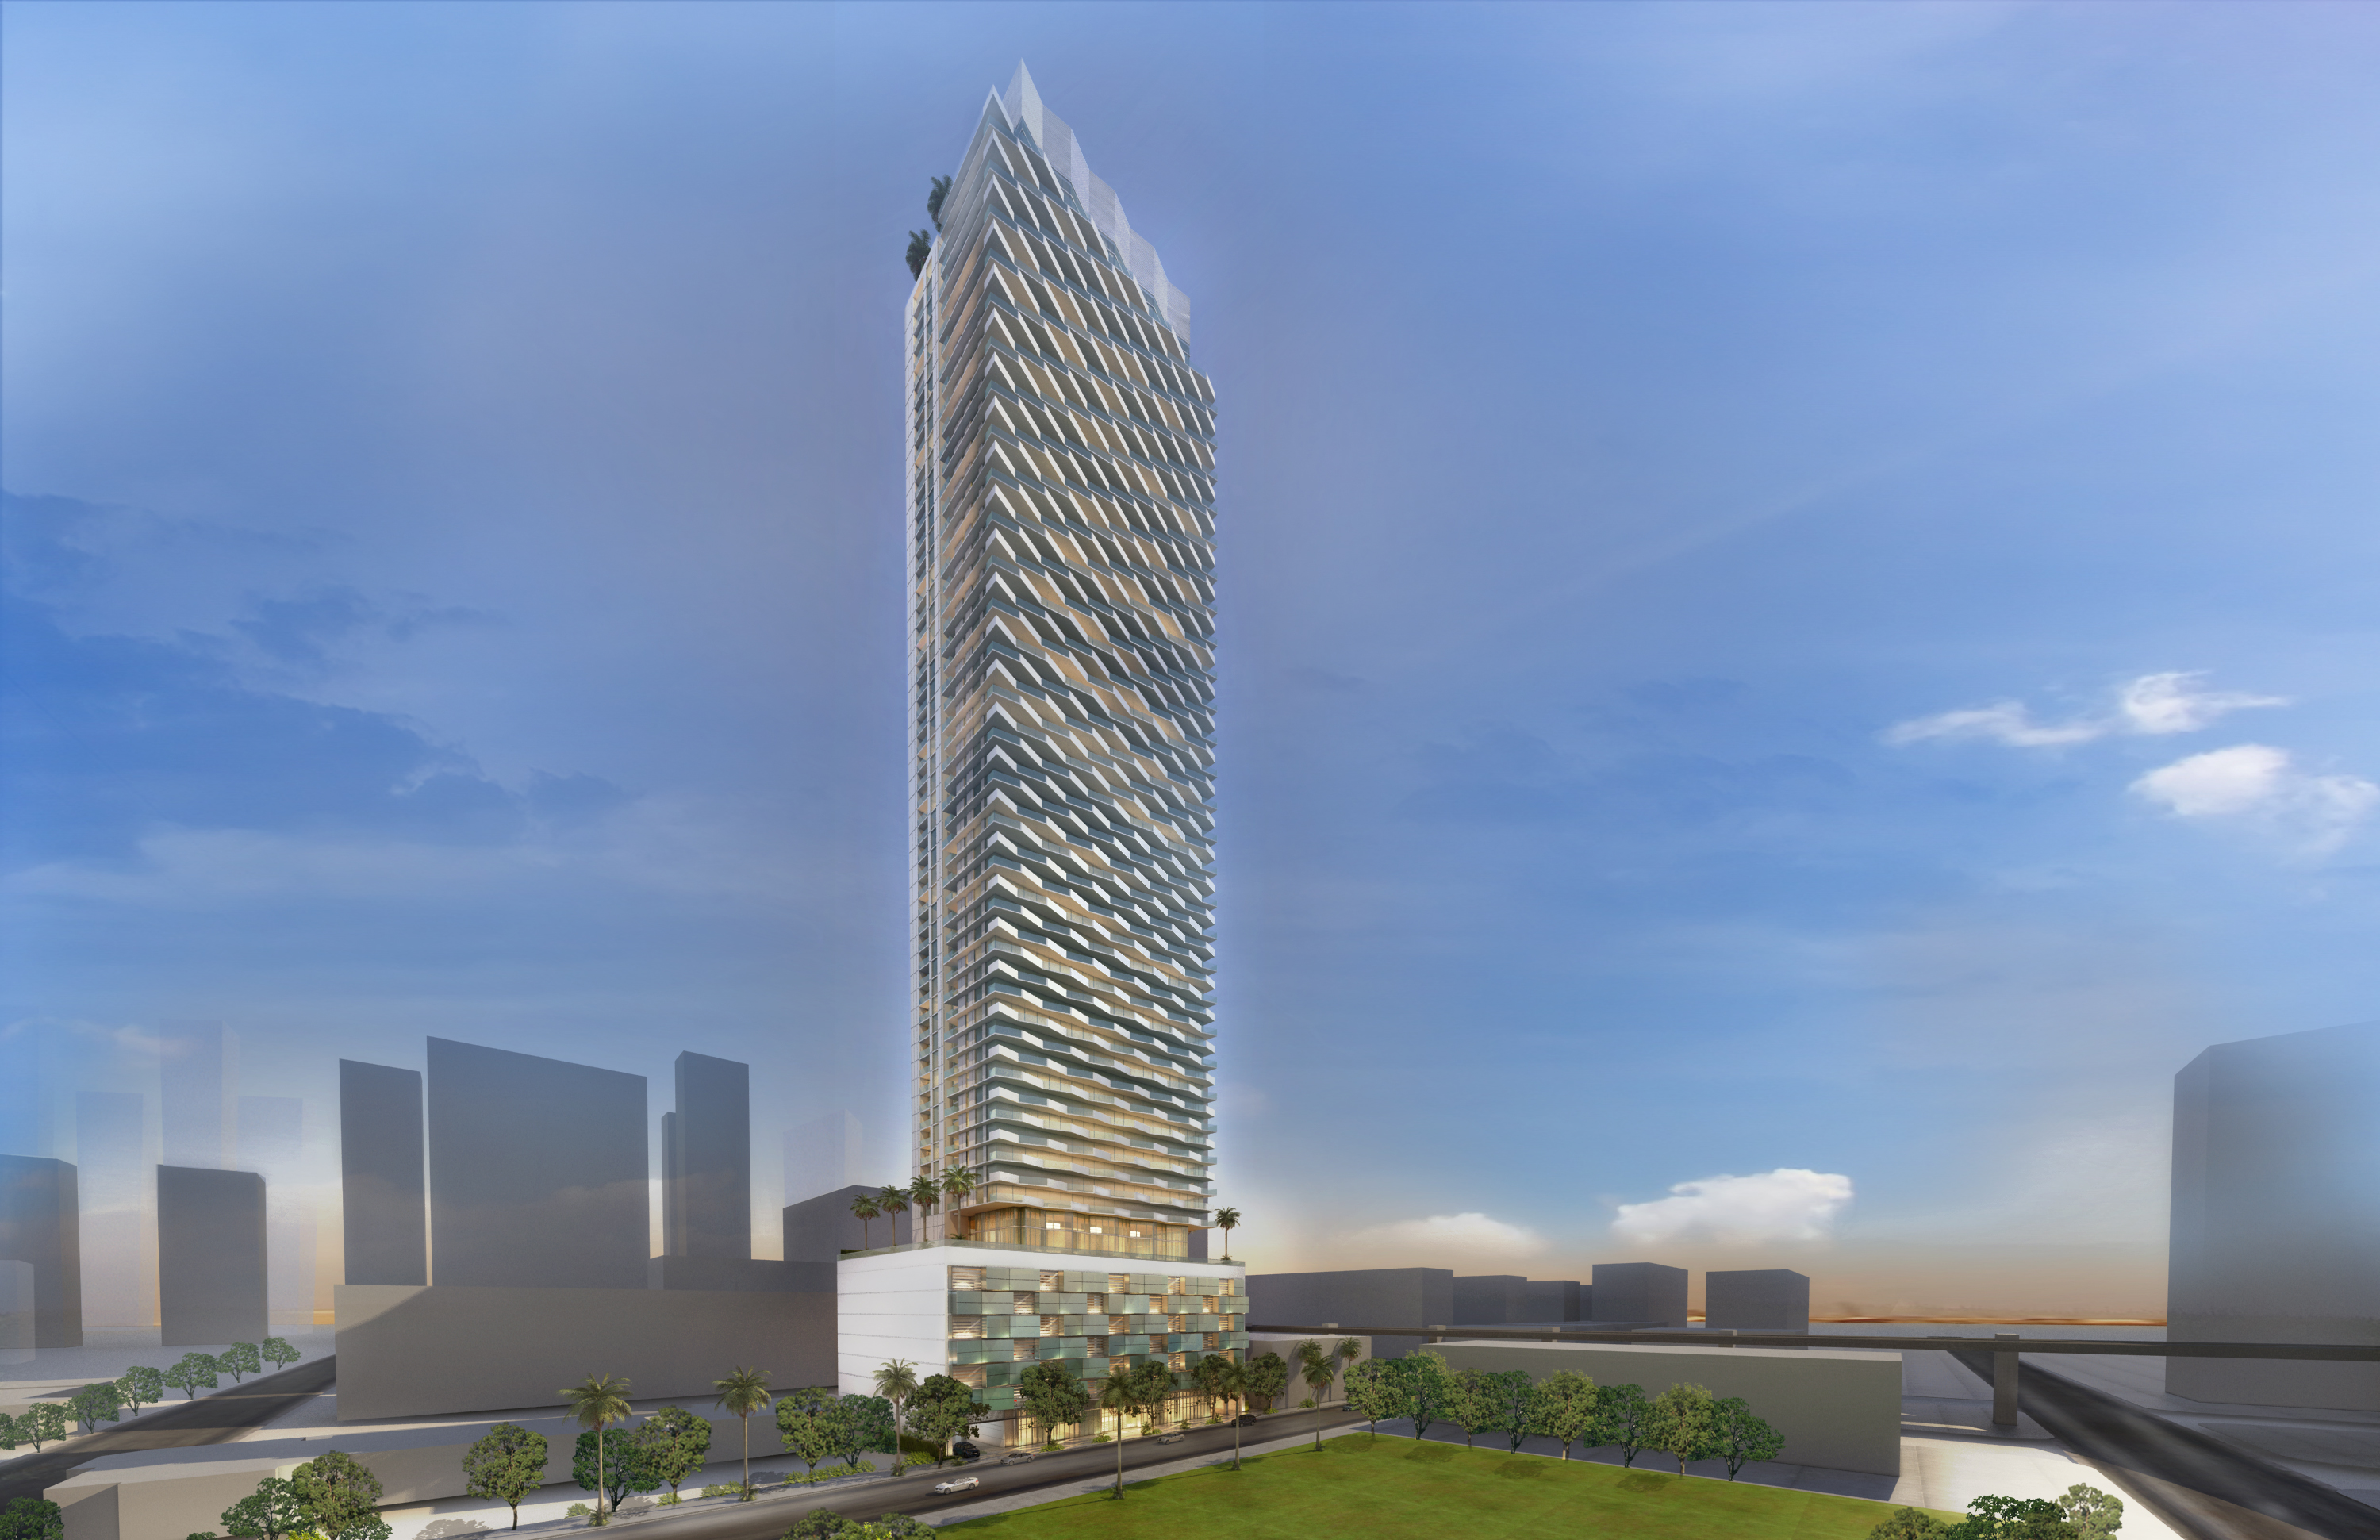 Brickell Bayview Center's Unique Architectural Design by ADD Inc will Alter Miami's Brickell Skyline